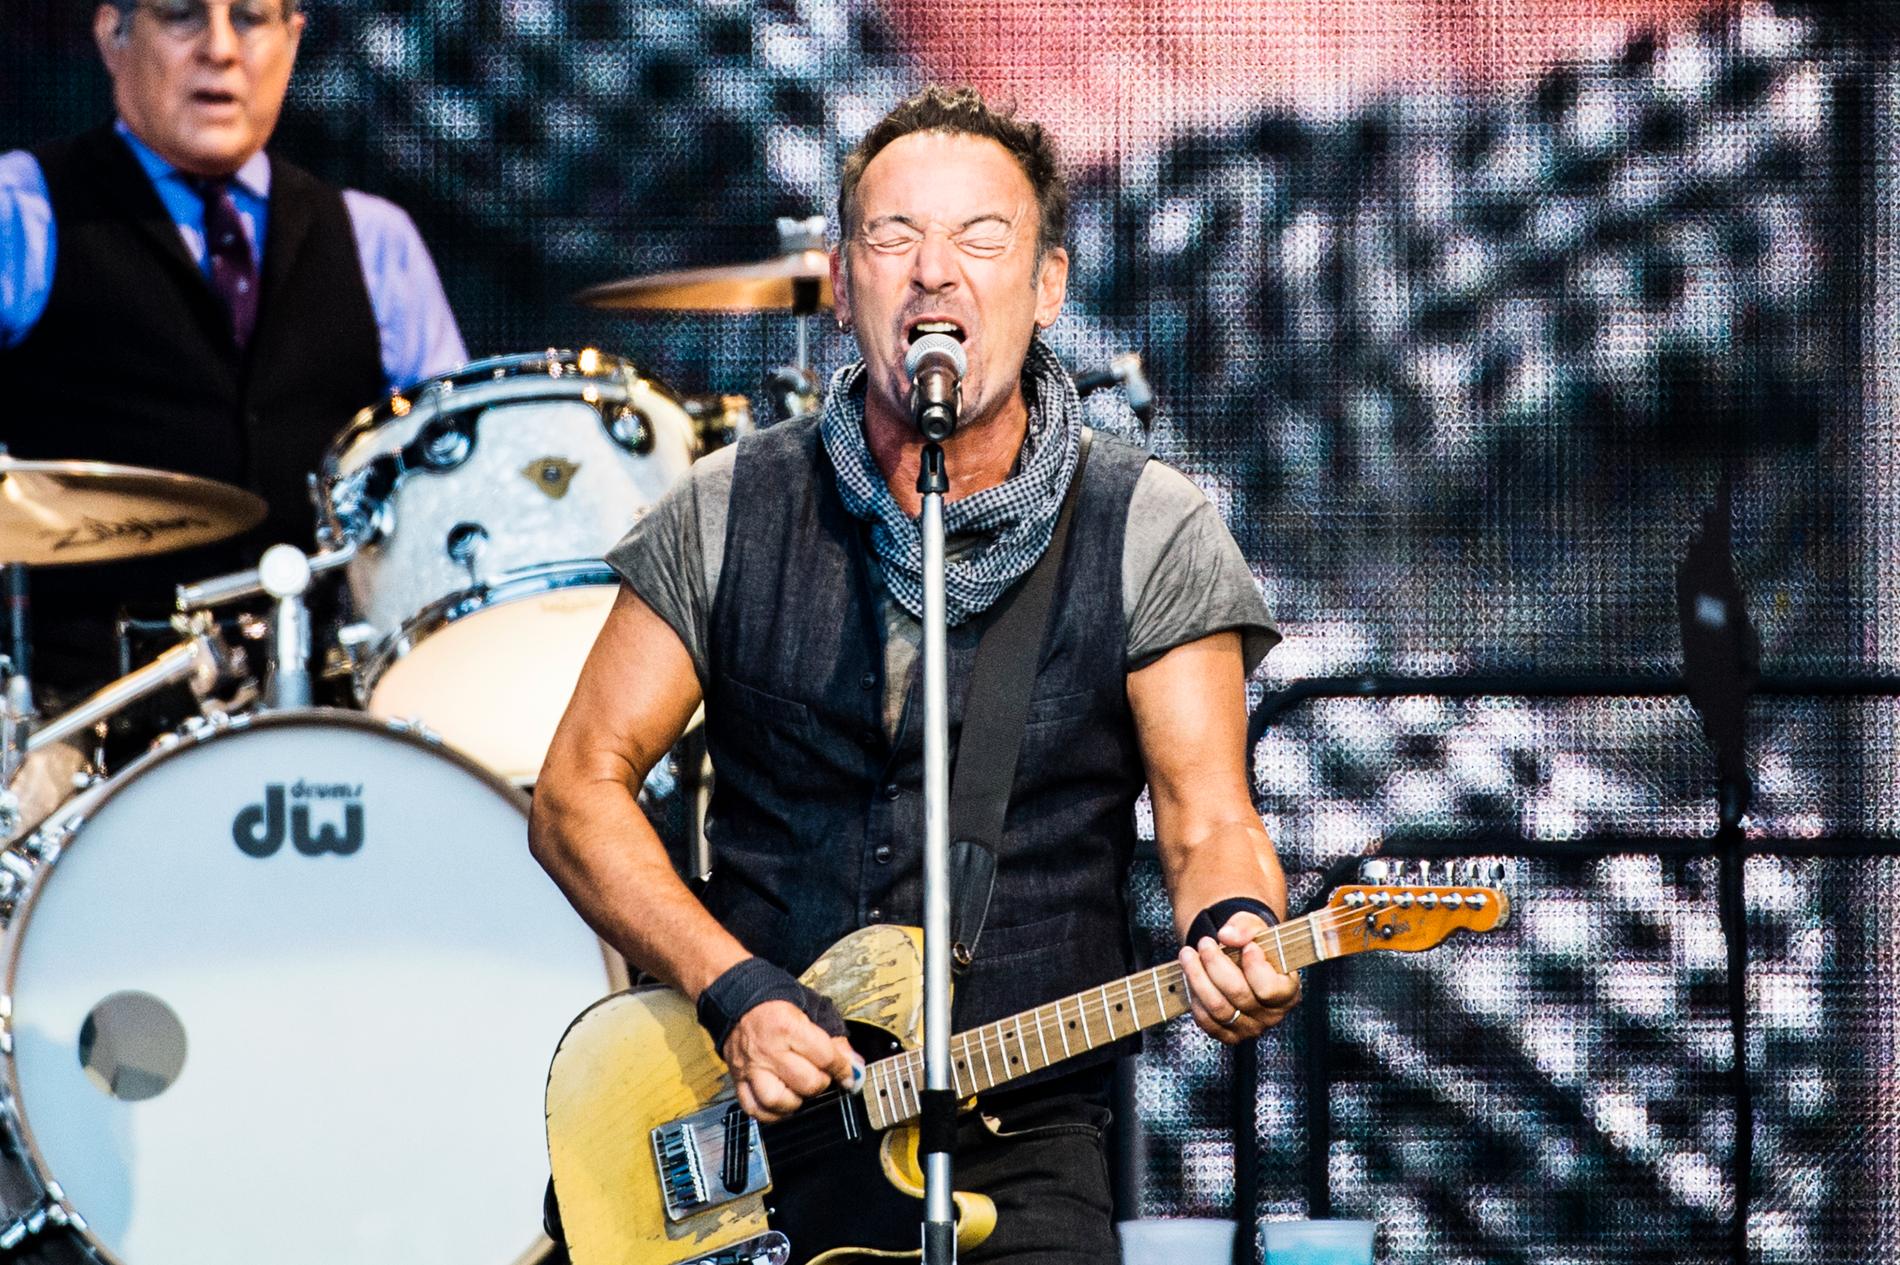 Rockakter som Bruce Springsteen har de dyraste konsertbiljetterna, enligt ny undersökning.